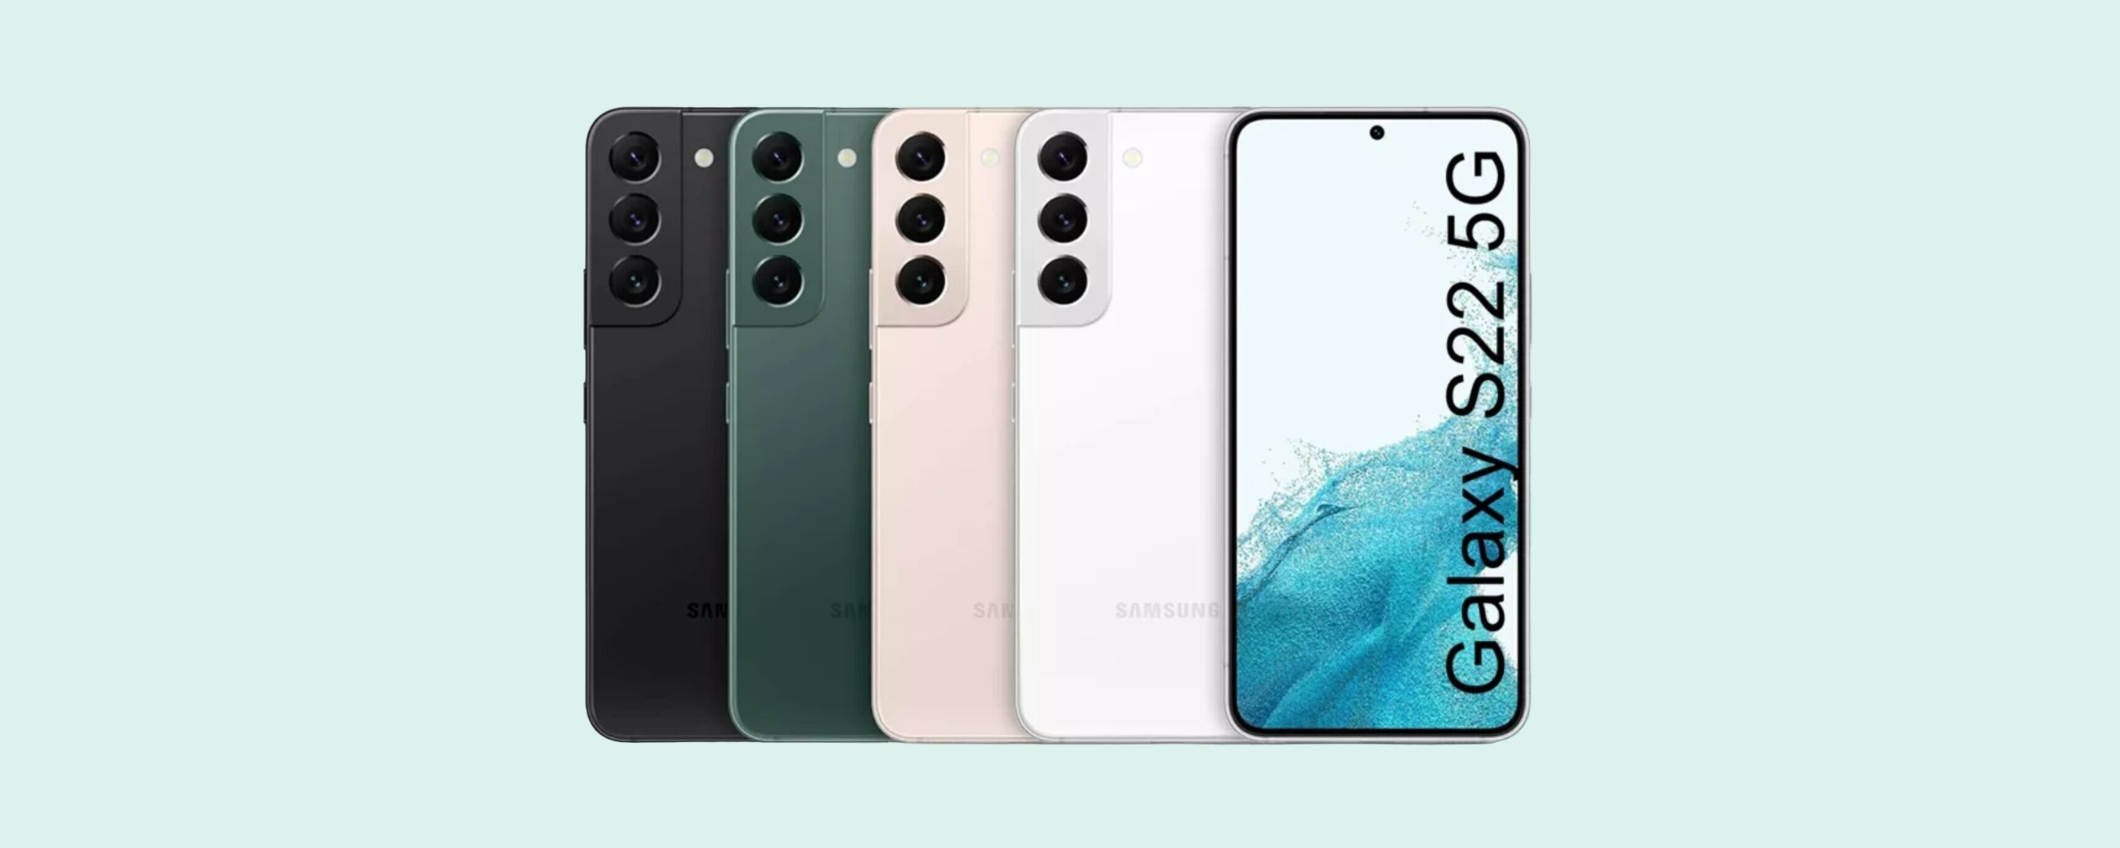 Samsung Galaxy S22 è l'AFFARE del giorno: prezzo DIMEZZATO